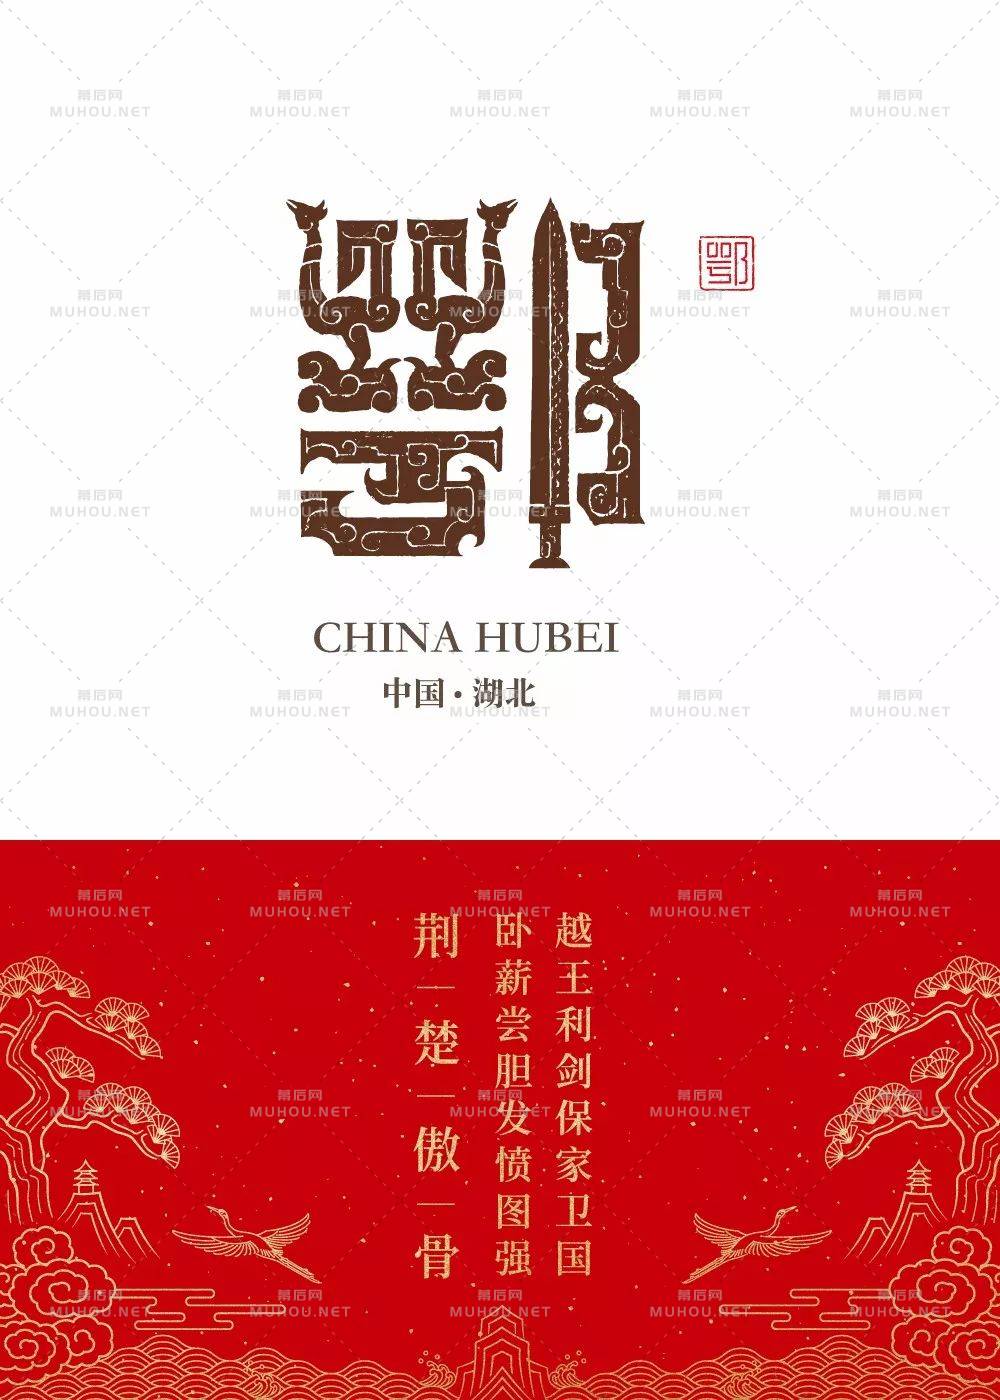 石昌鸿34个省市简称版艺术文字设计作品，2020版全新发布！